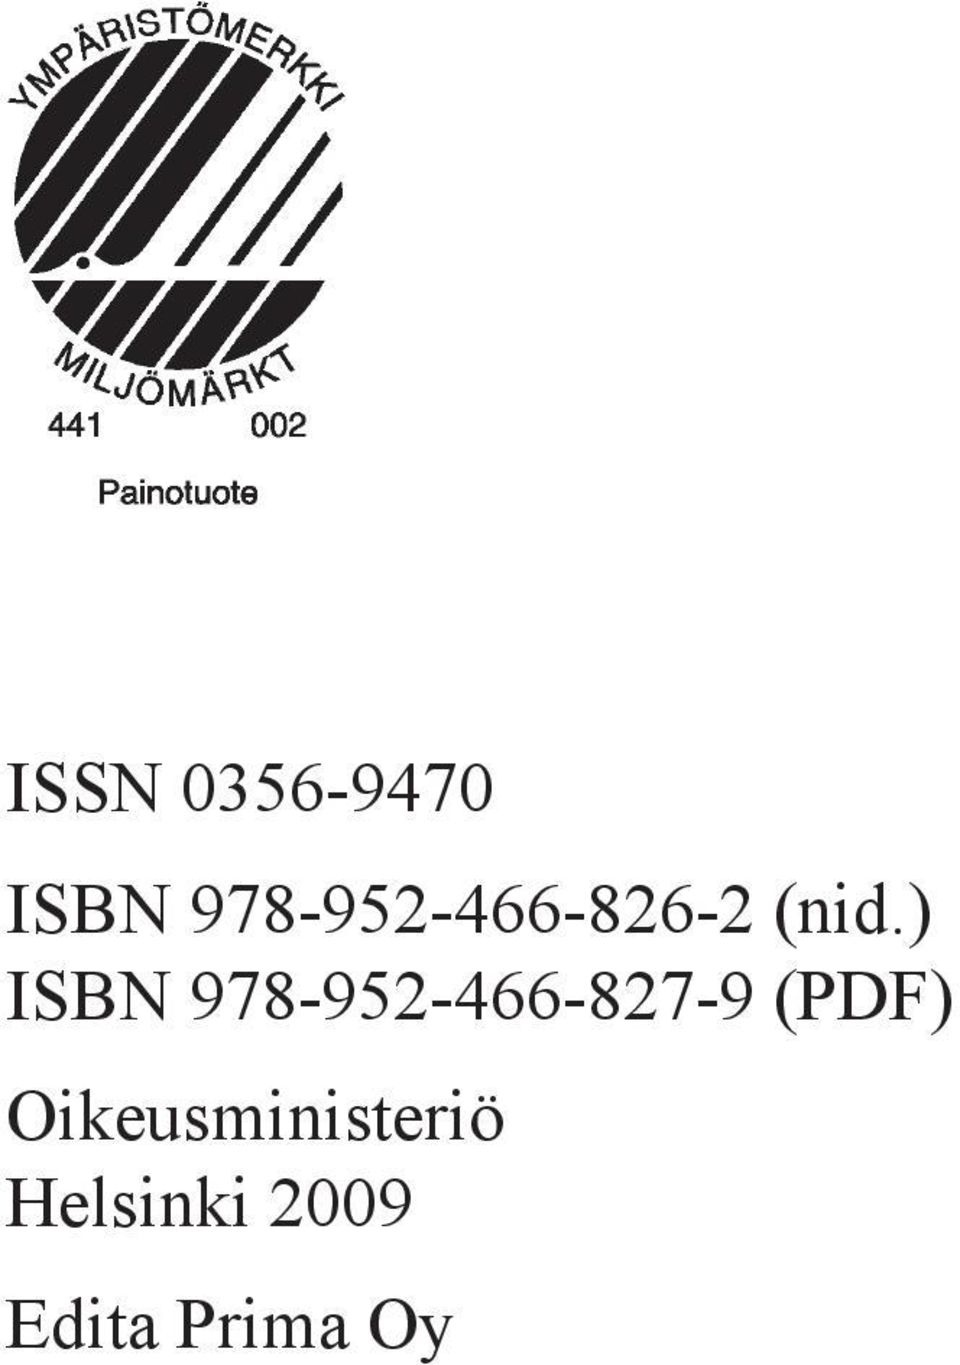 ) ISBN 978-952-466-827-9